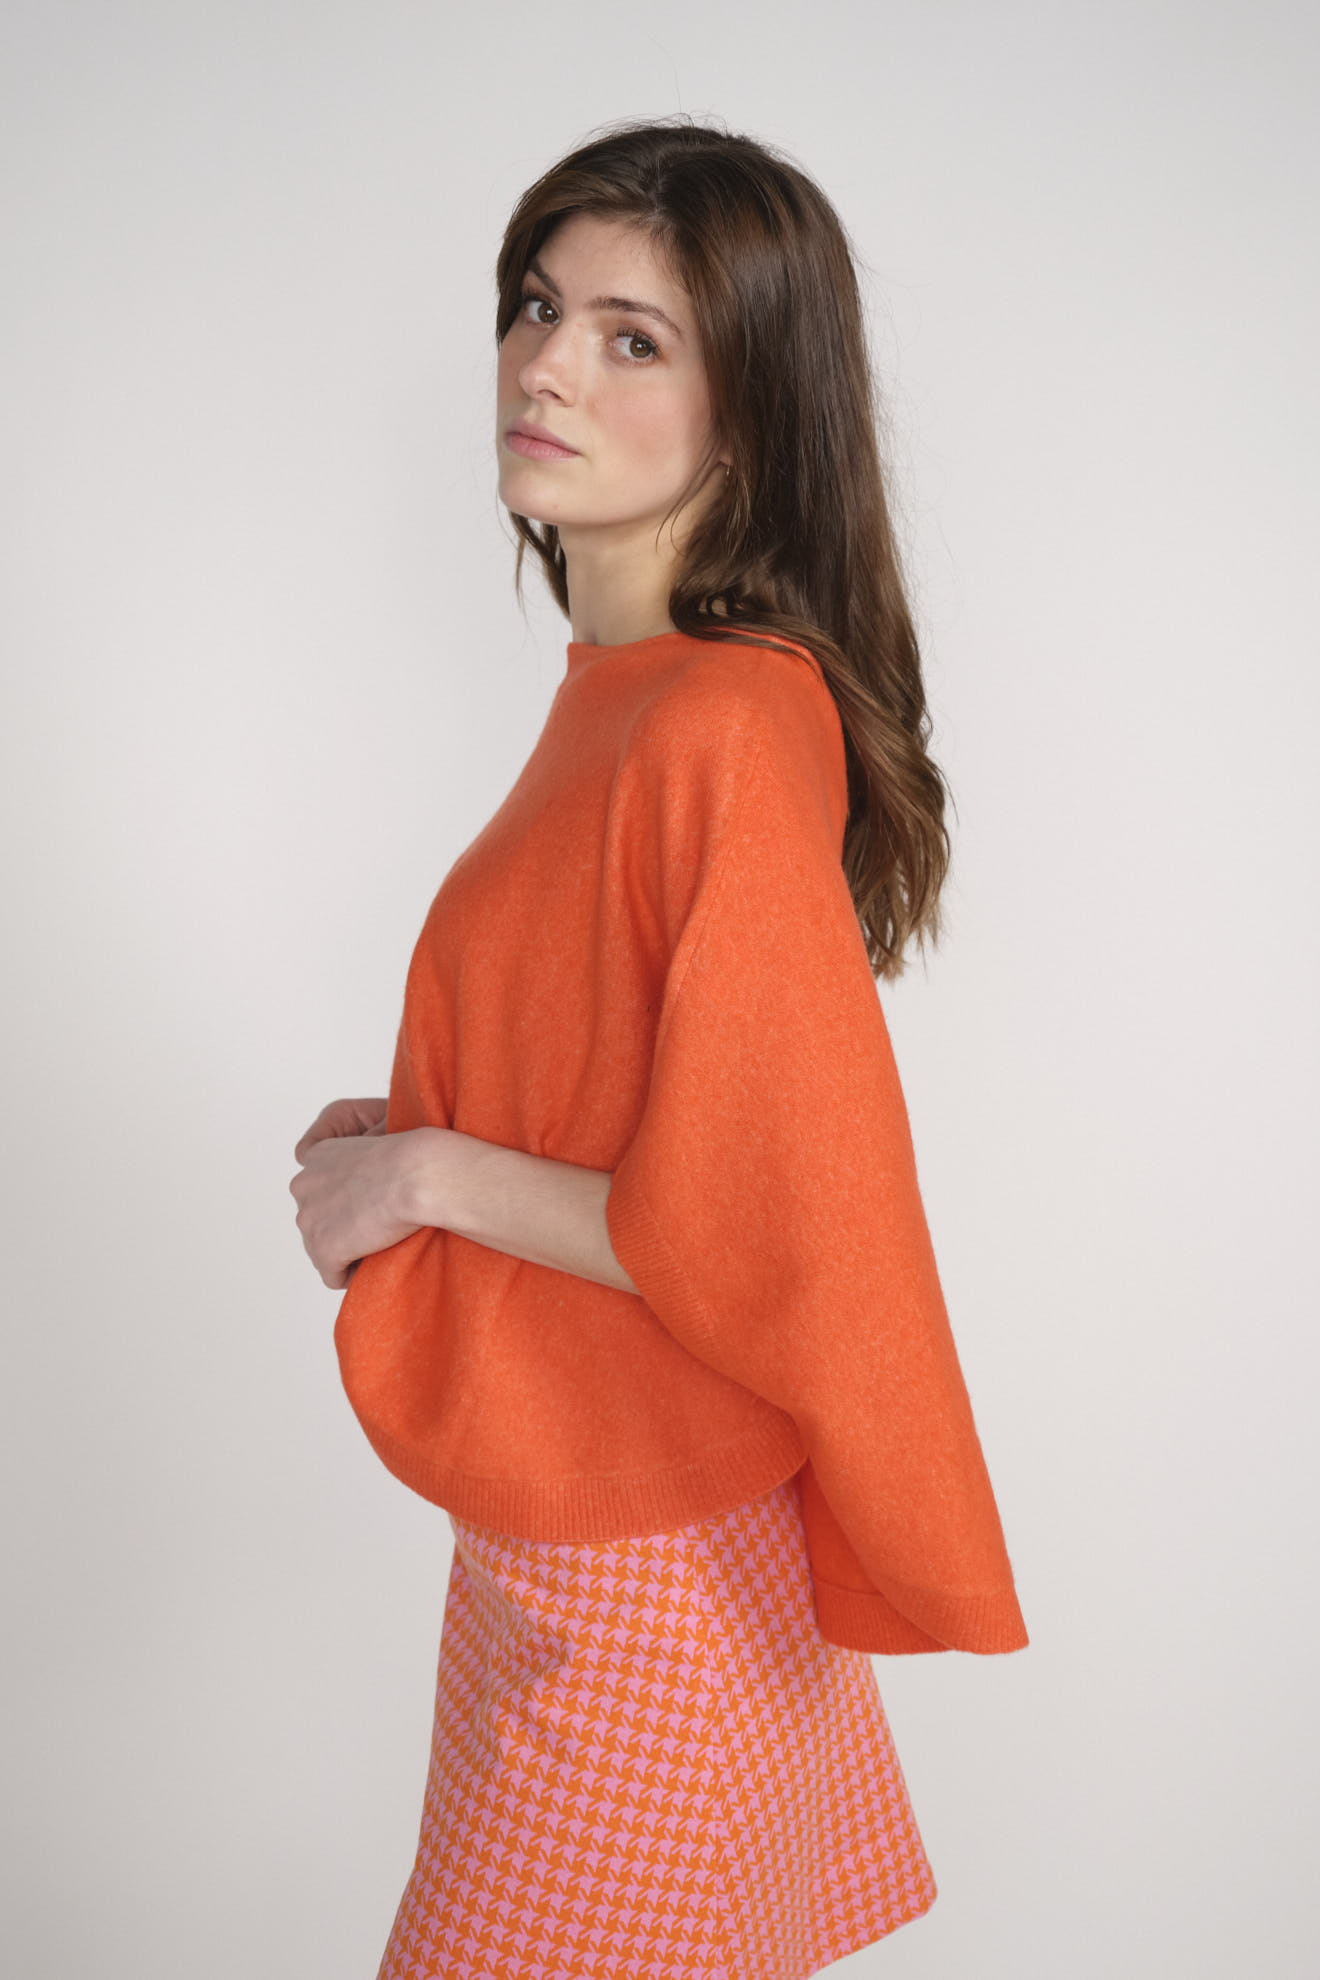 Darby - Maglia a mantella in cashmere arancione M